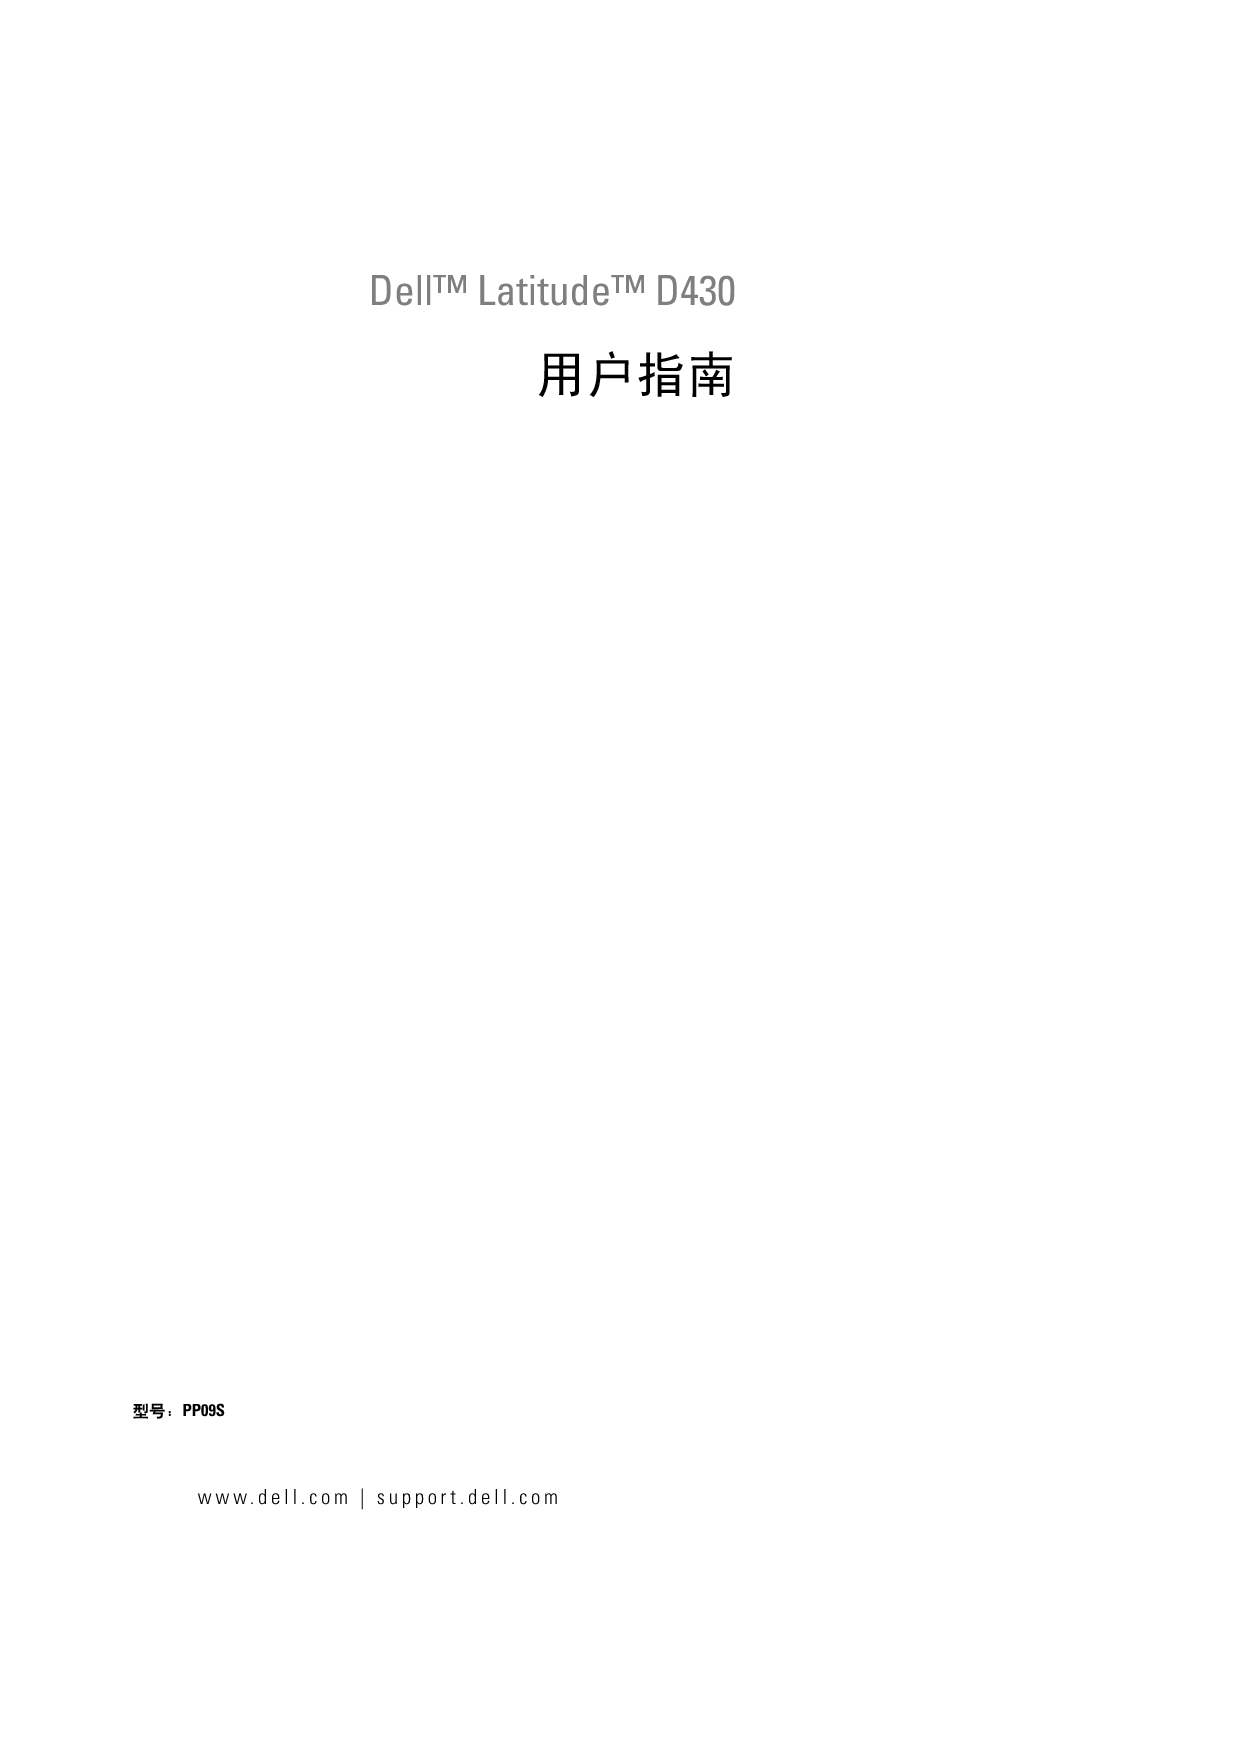 戴尔 Dell Latitude D430 用户指南 封面